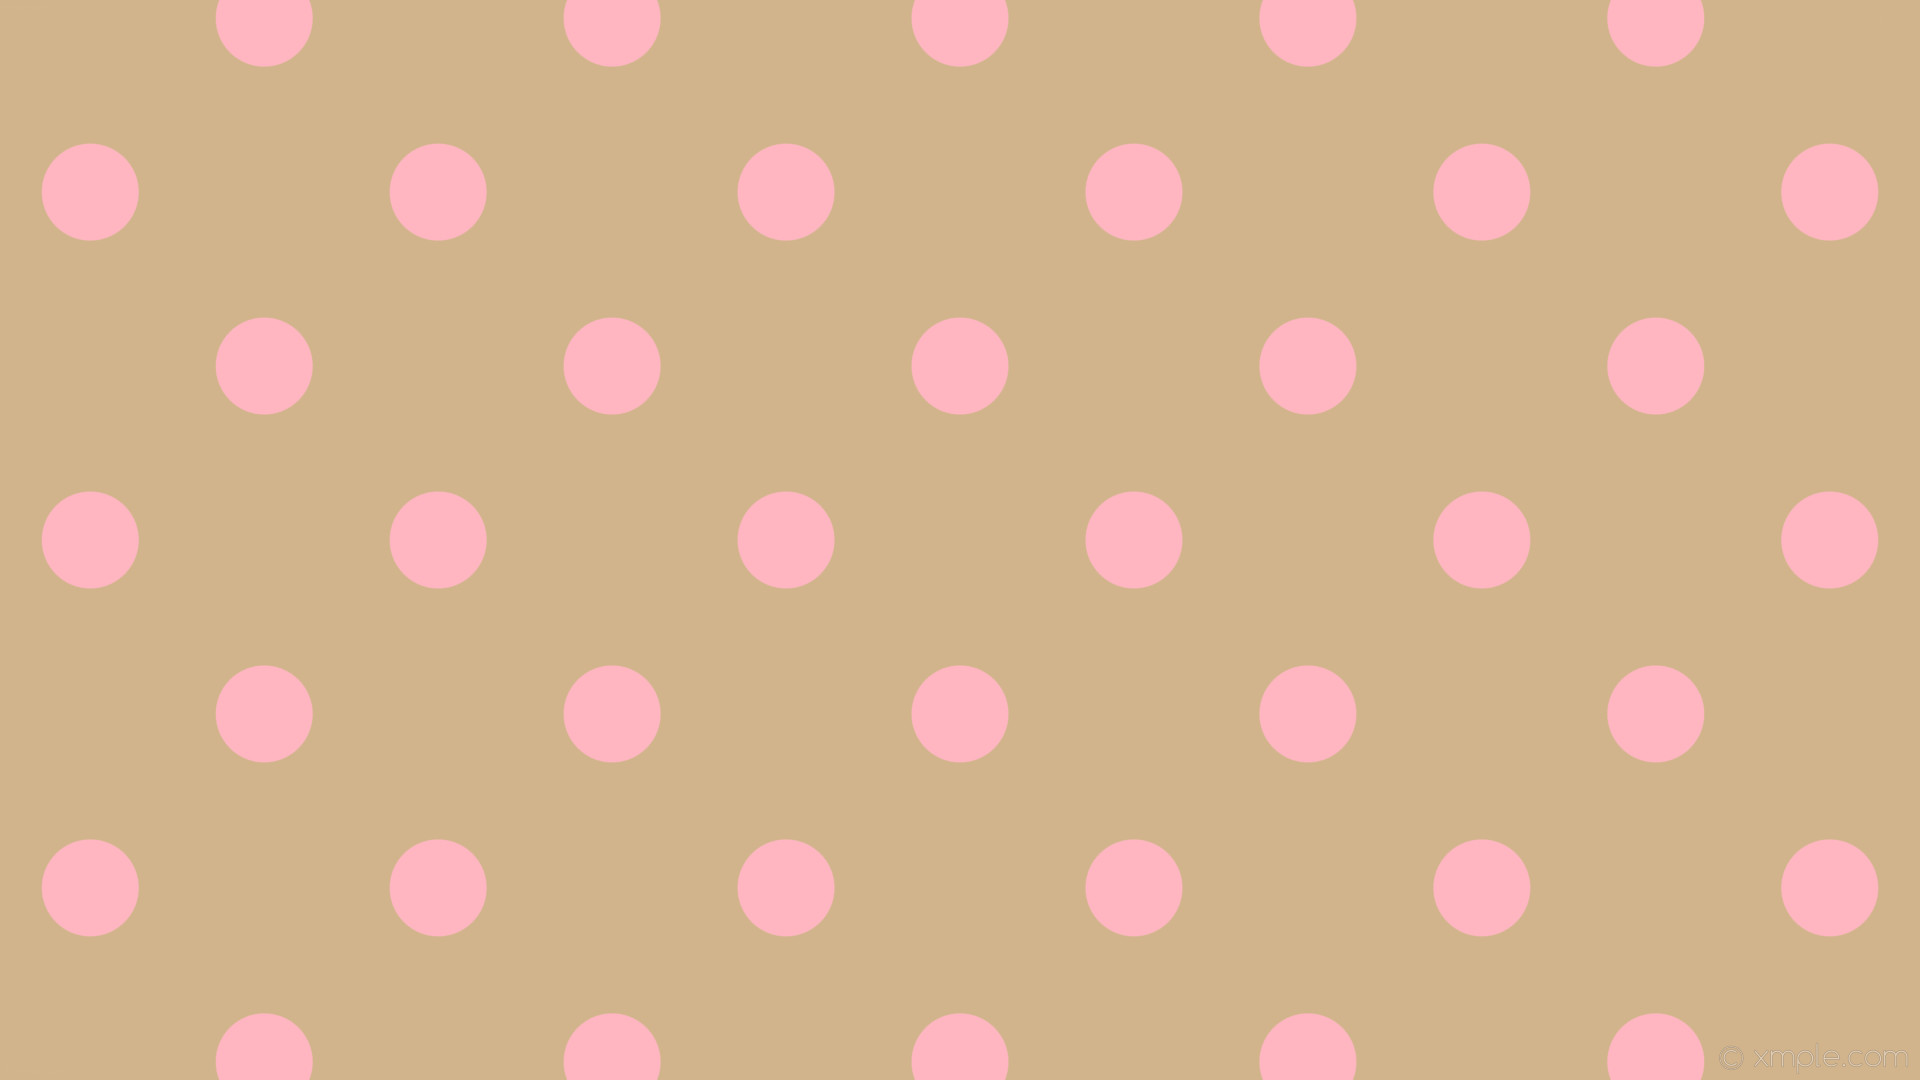 1920x1080 wallpaper pink dots brown polka spots tan light pink #d2b48c #ffb6c1 315Â°  97px